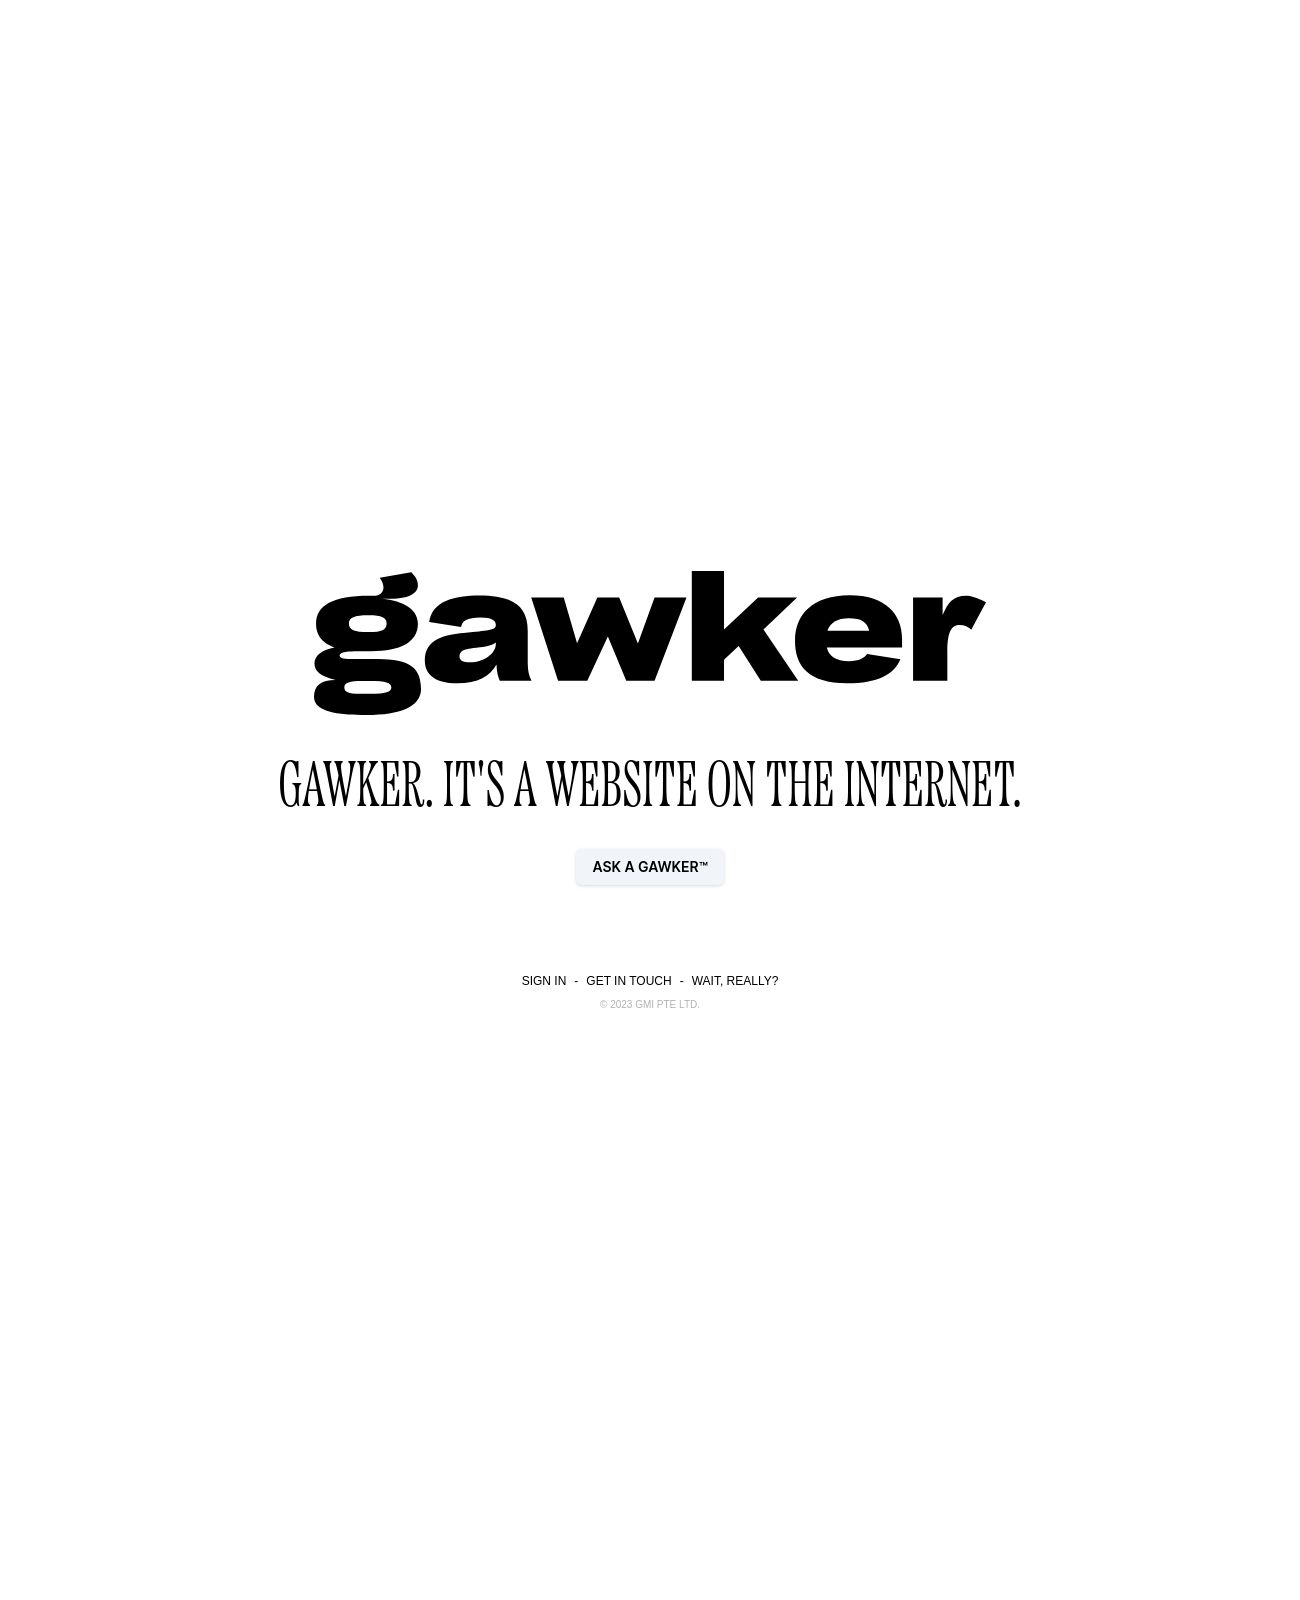 Gawker